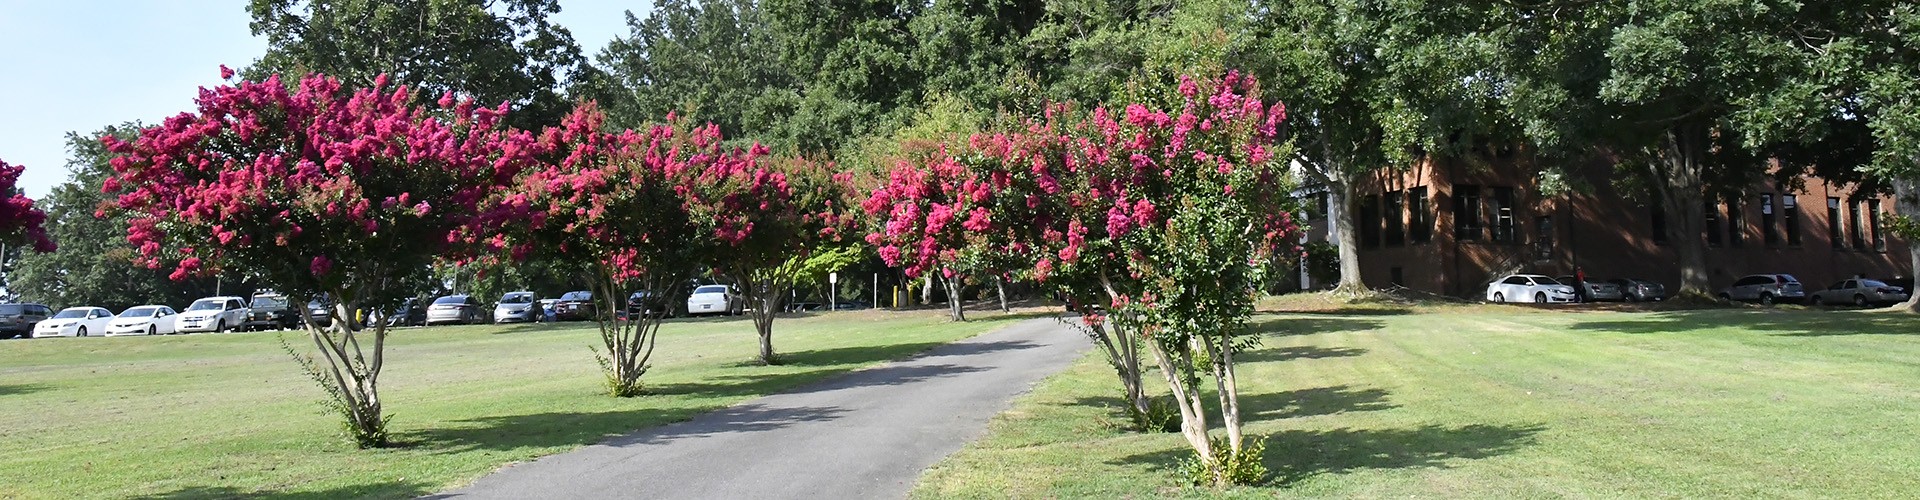 Cemetery crepe myrtle trees in bloom 